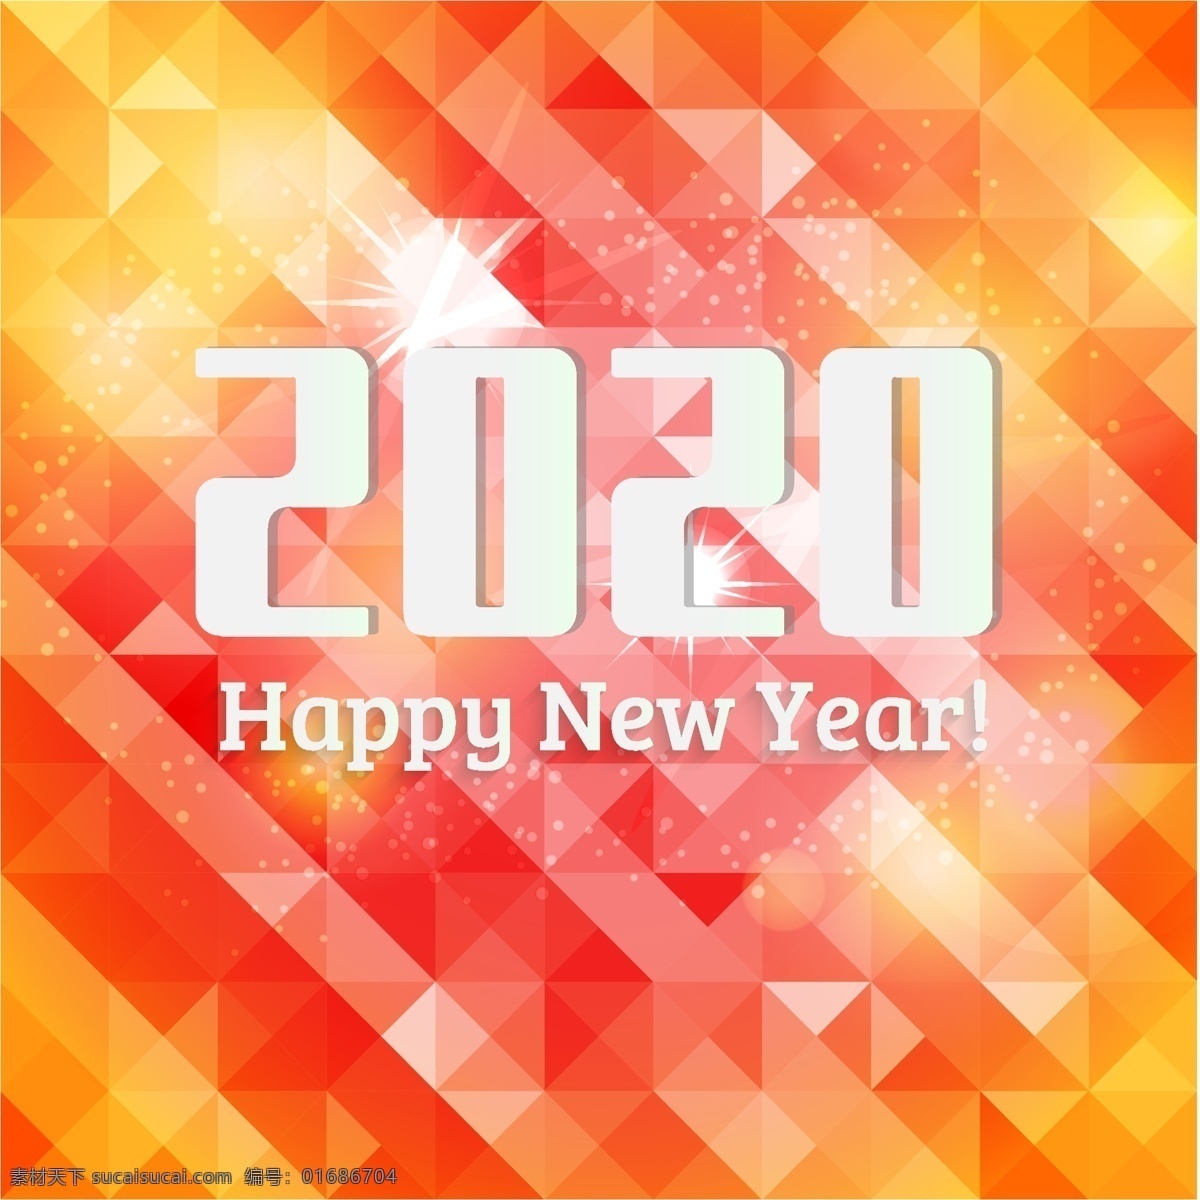 新年贺卡 新年 2020年 新年快乐 菱形 渐变 热烈 闪光 矢量图 海报 pop